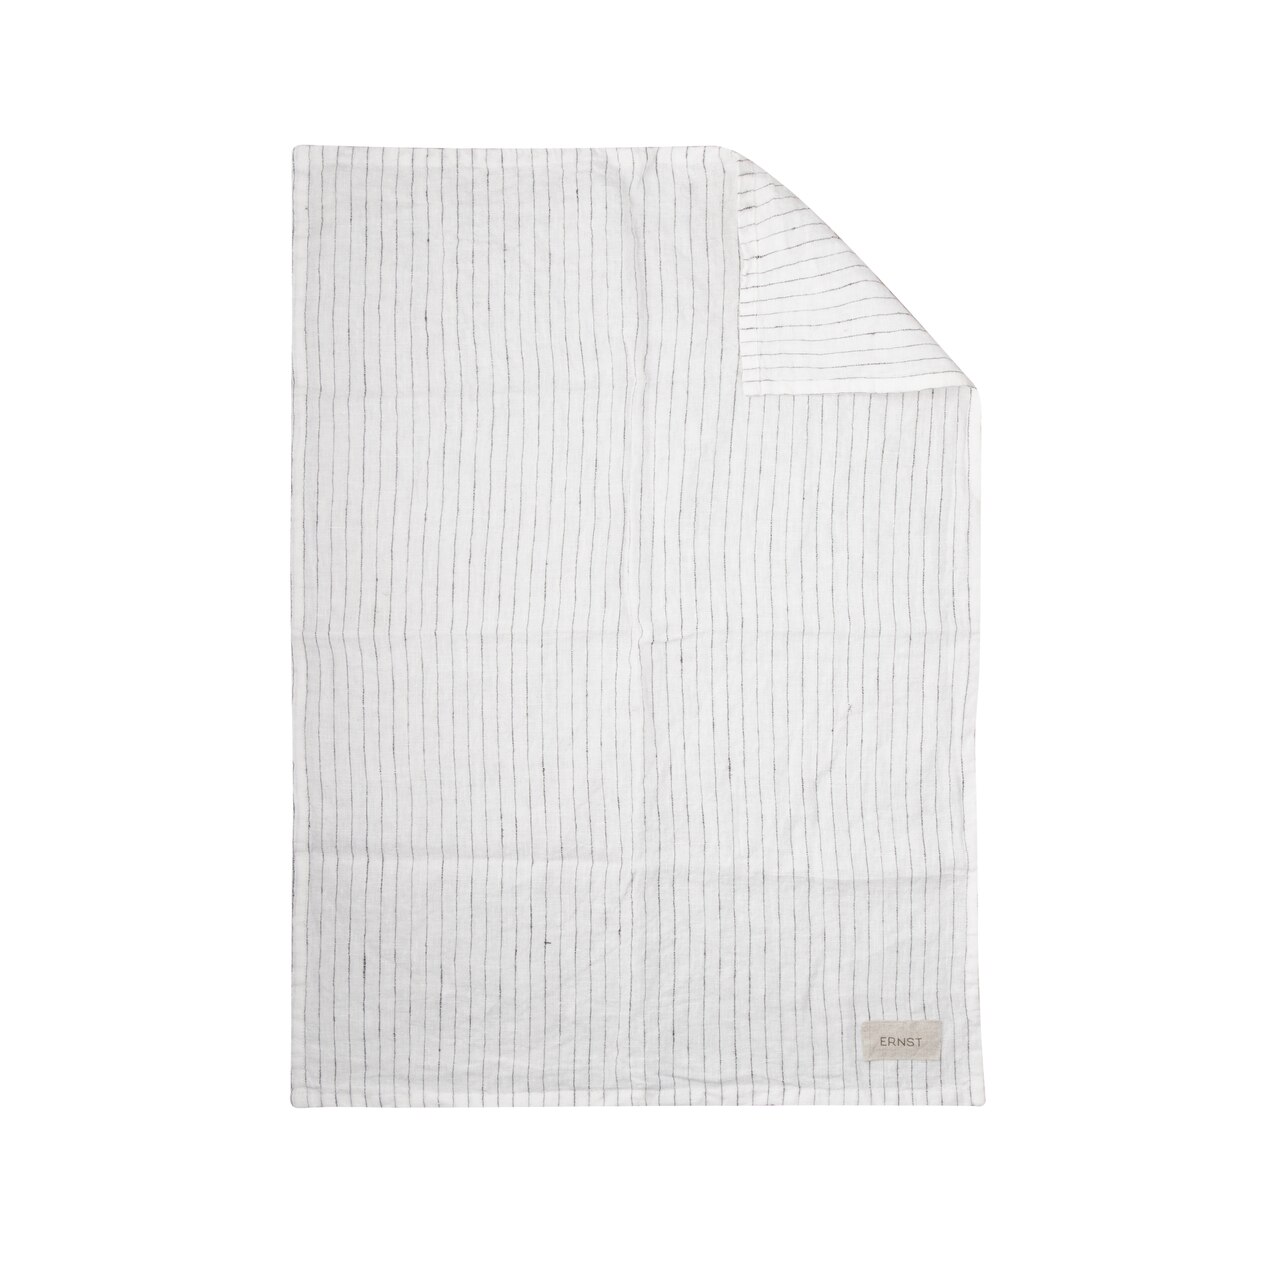 Ernst White Striped Linen Kitchen Towel